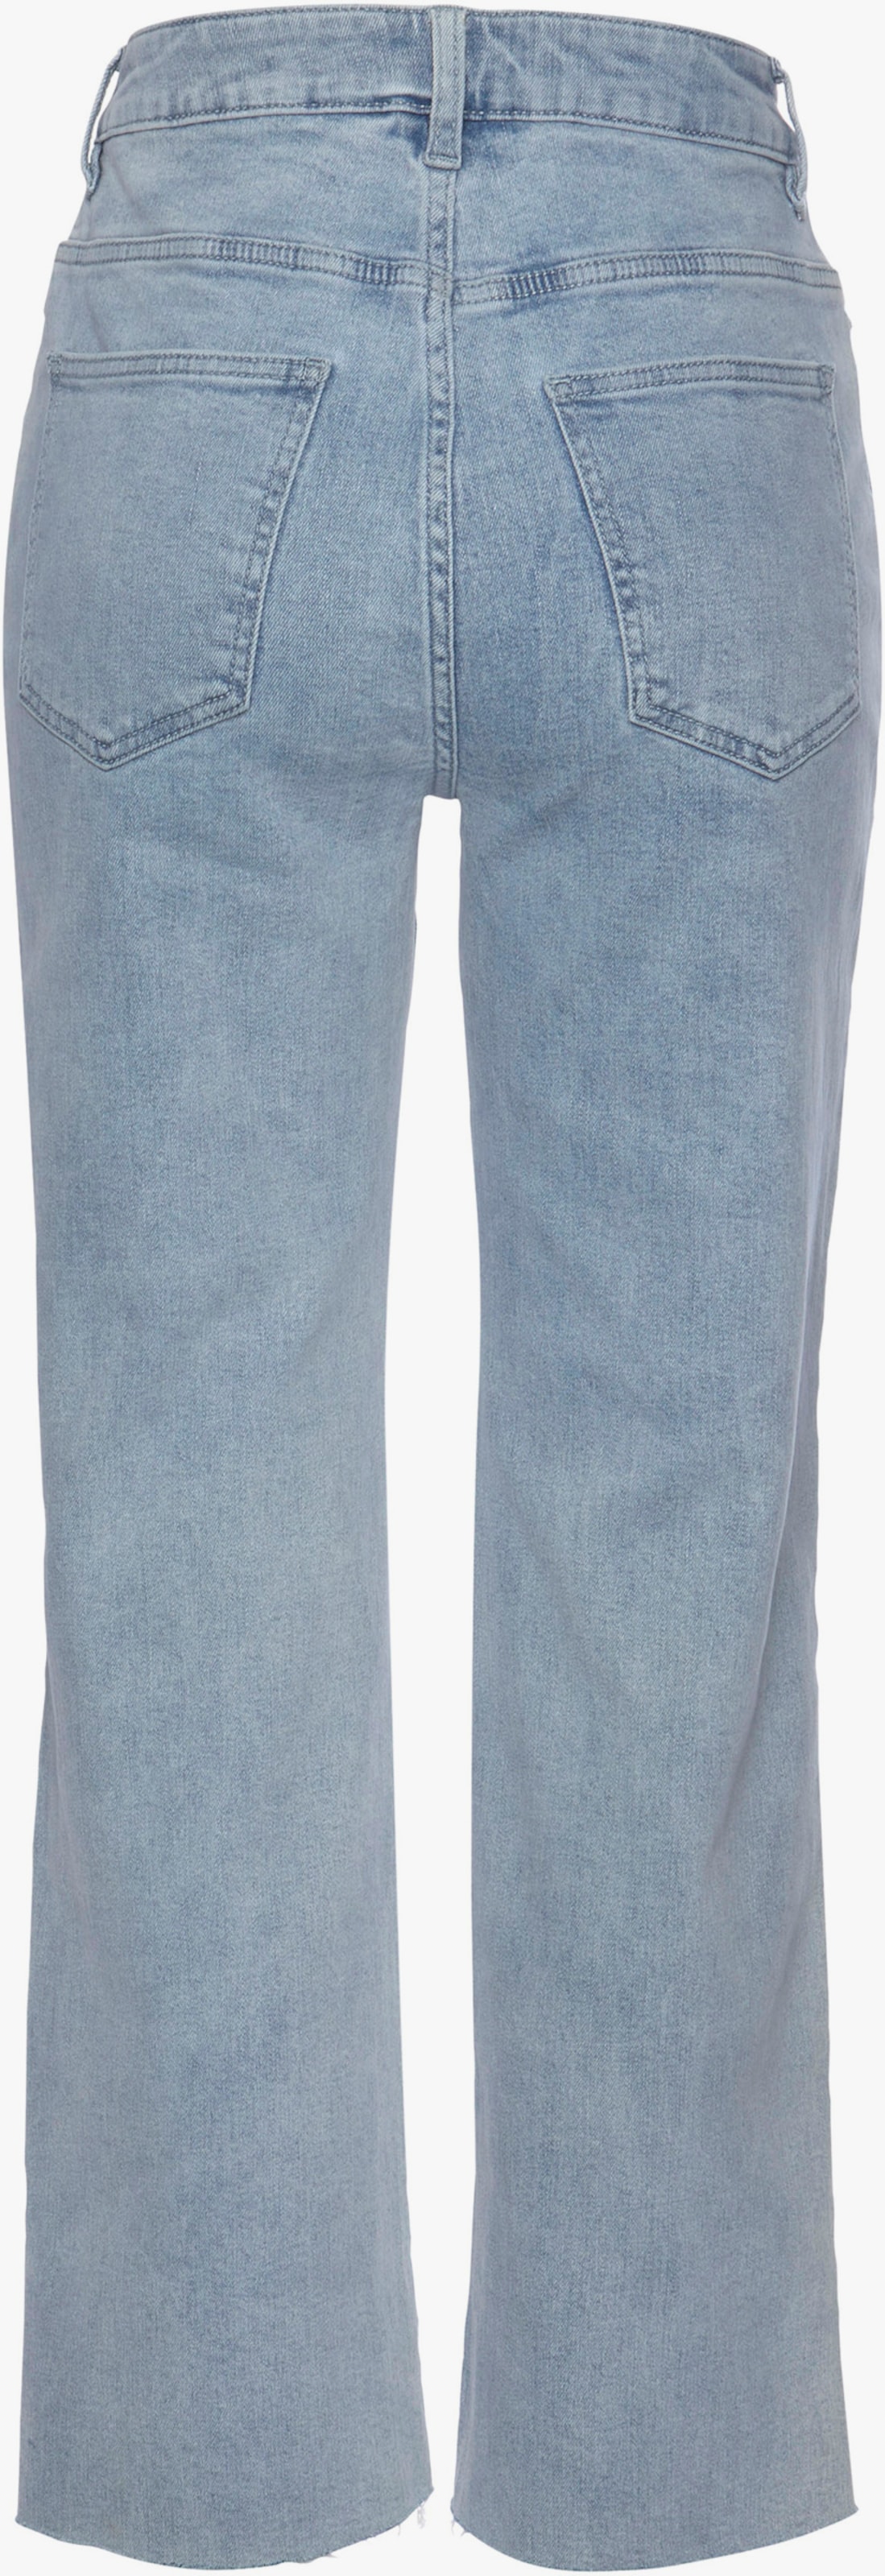 Buffalo Wijde jeans - light blue washed